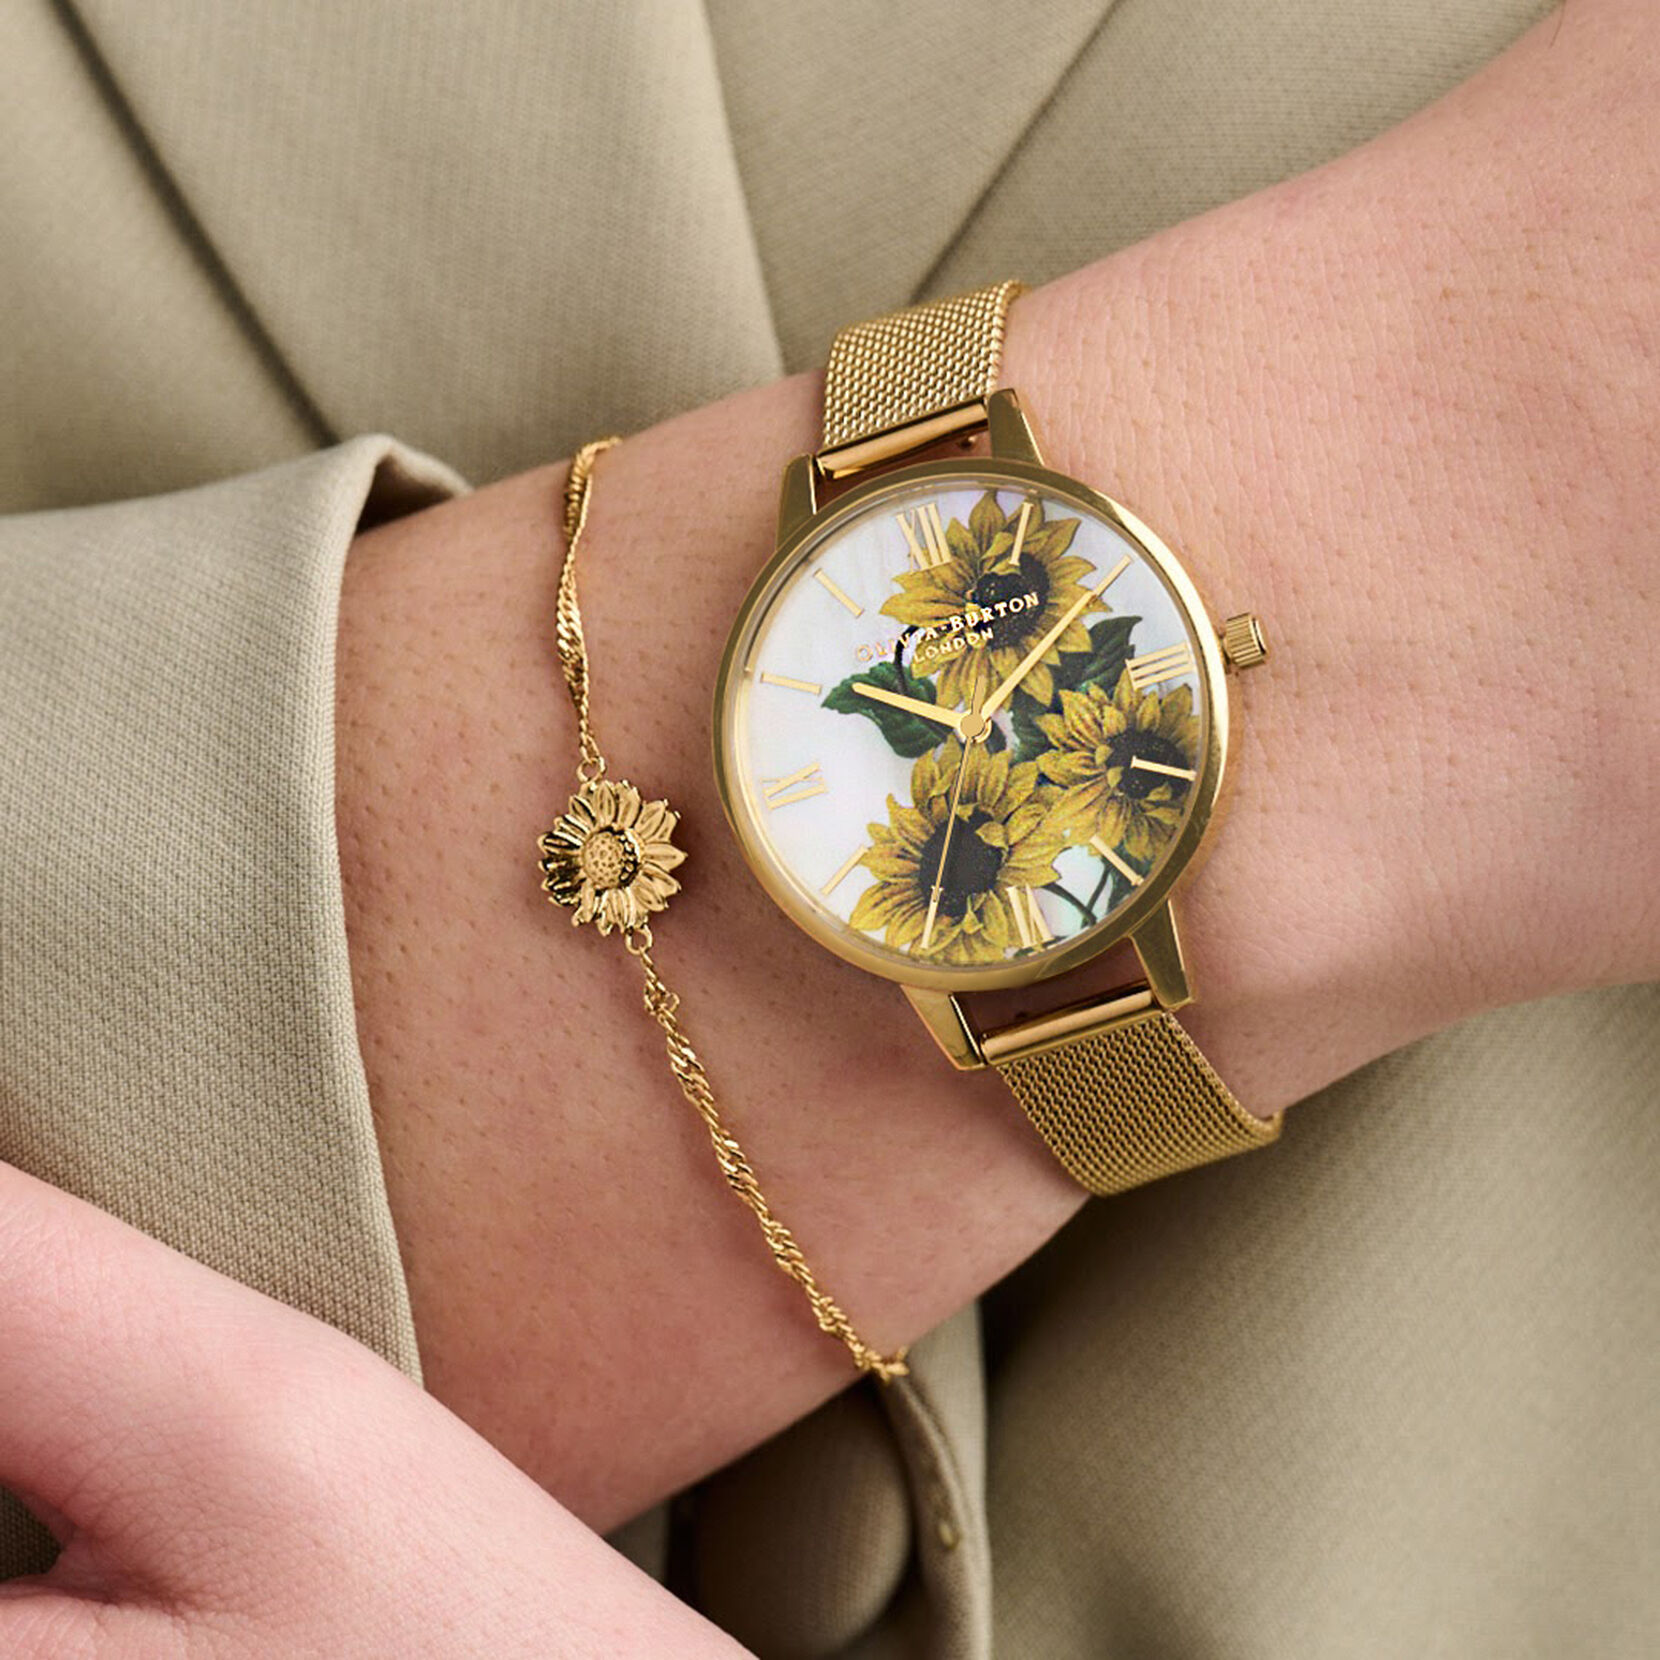 Sunflower 34mm White & Gold Mesh Watch & Sunflower Bracelet Gift Set